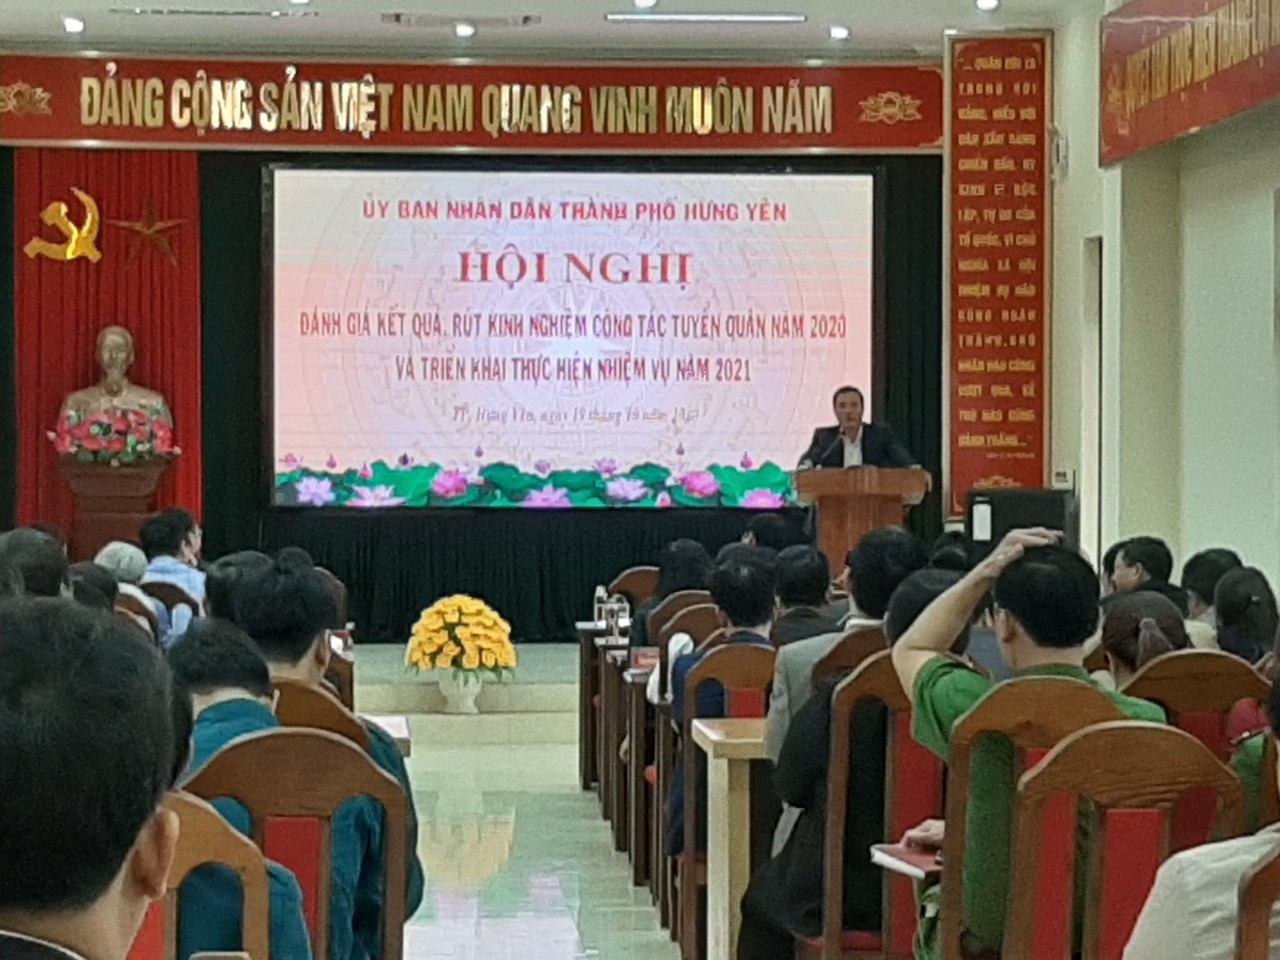 Thành phố Hưng Yên tổ chức hội nghị tổng kết công tác tuyển quân năm 2020, triển khai kế hoạch tuyển quân năm 2021